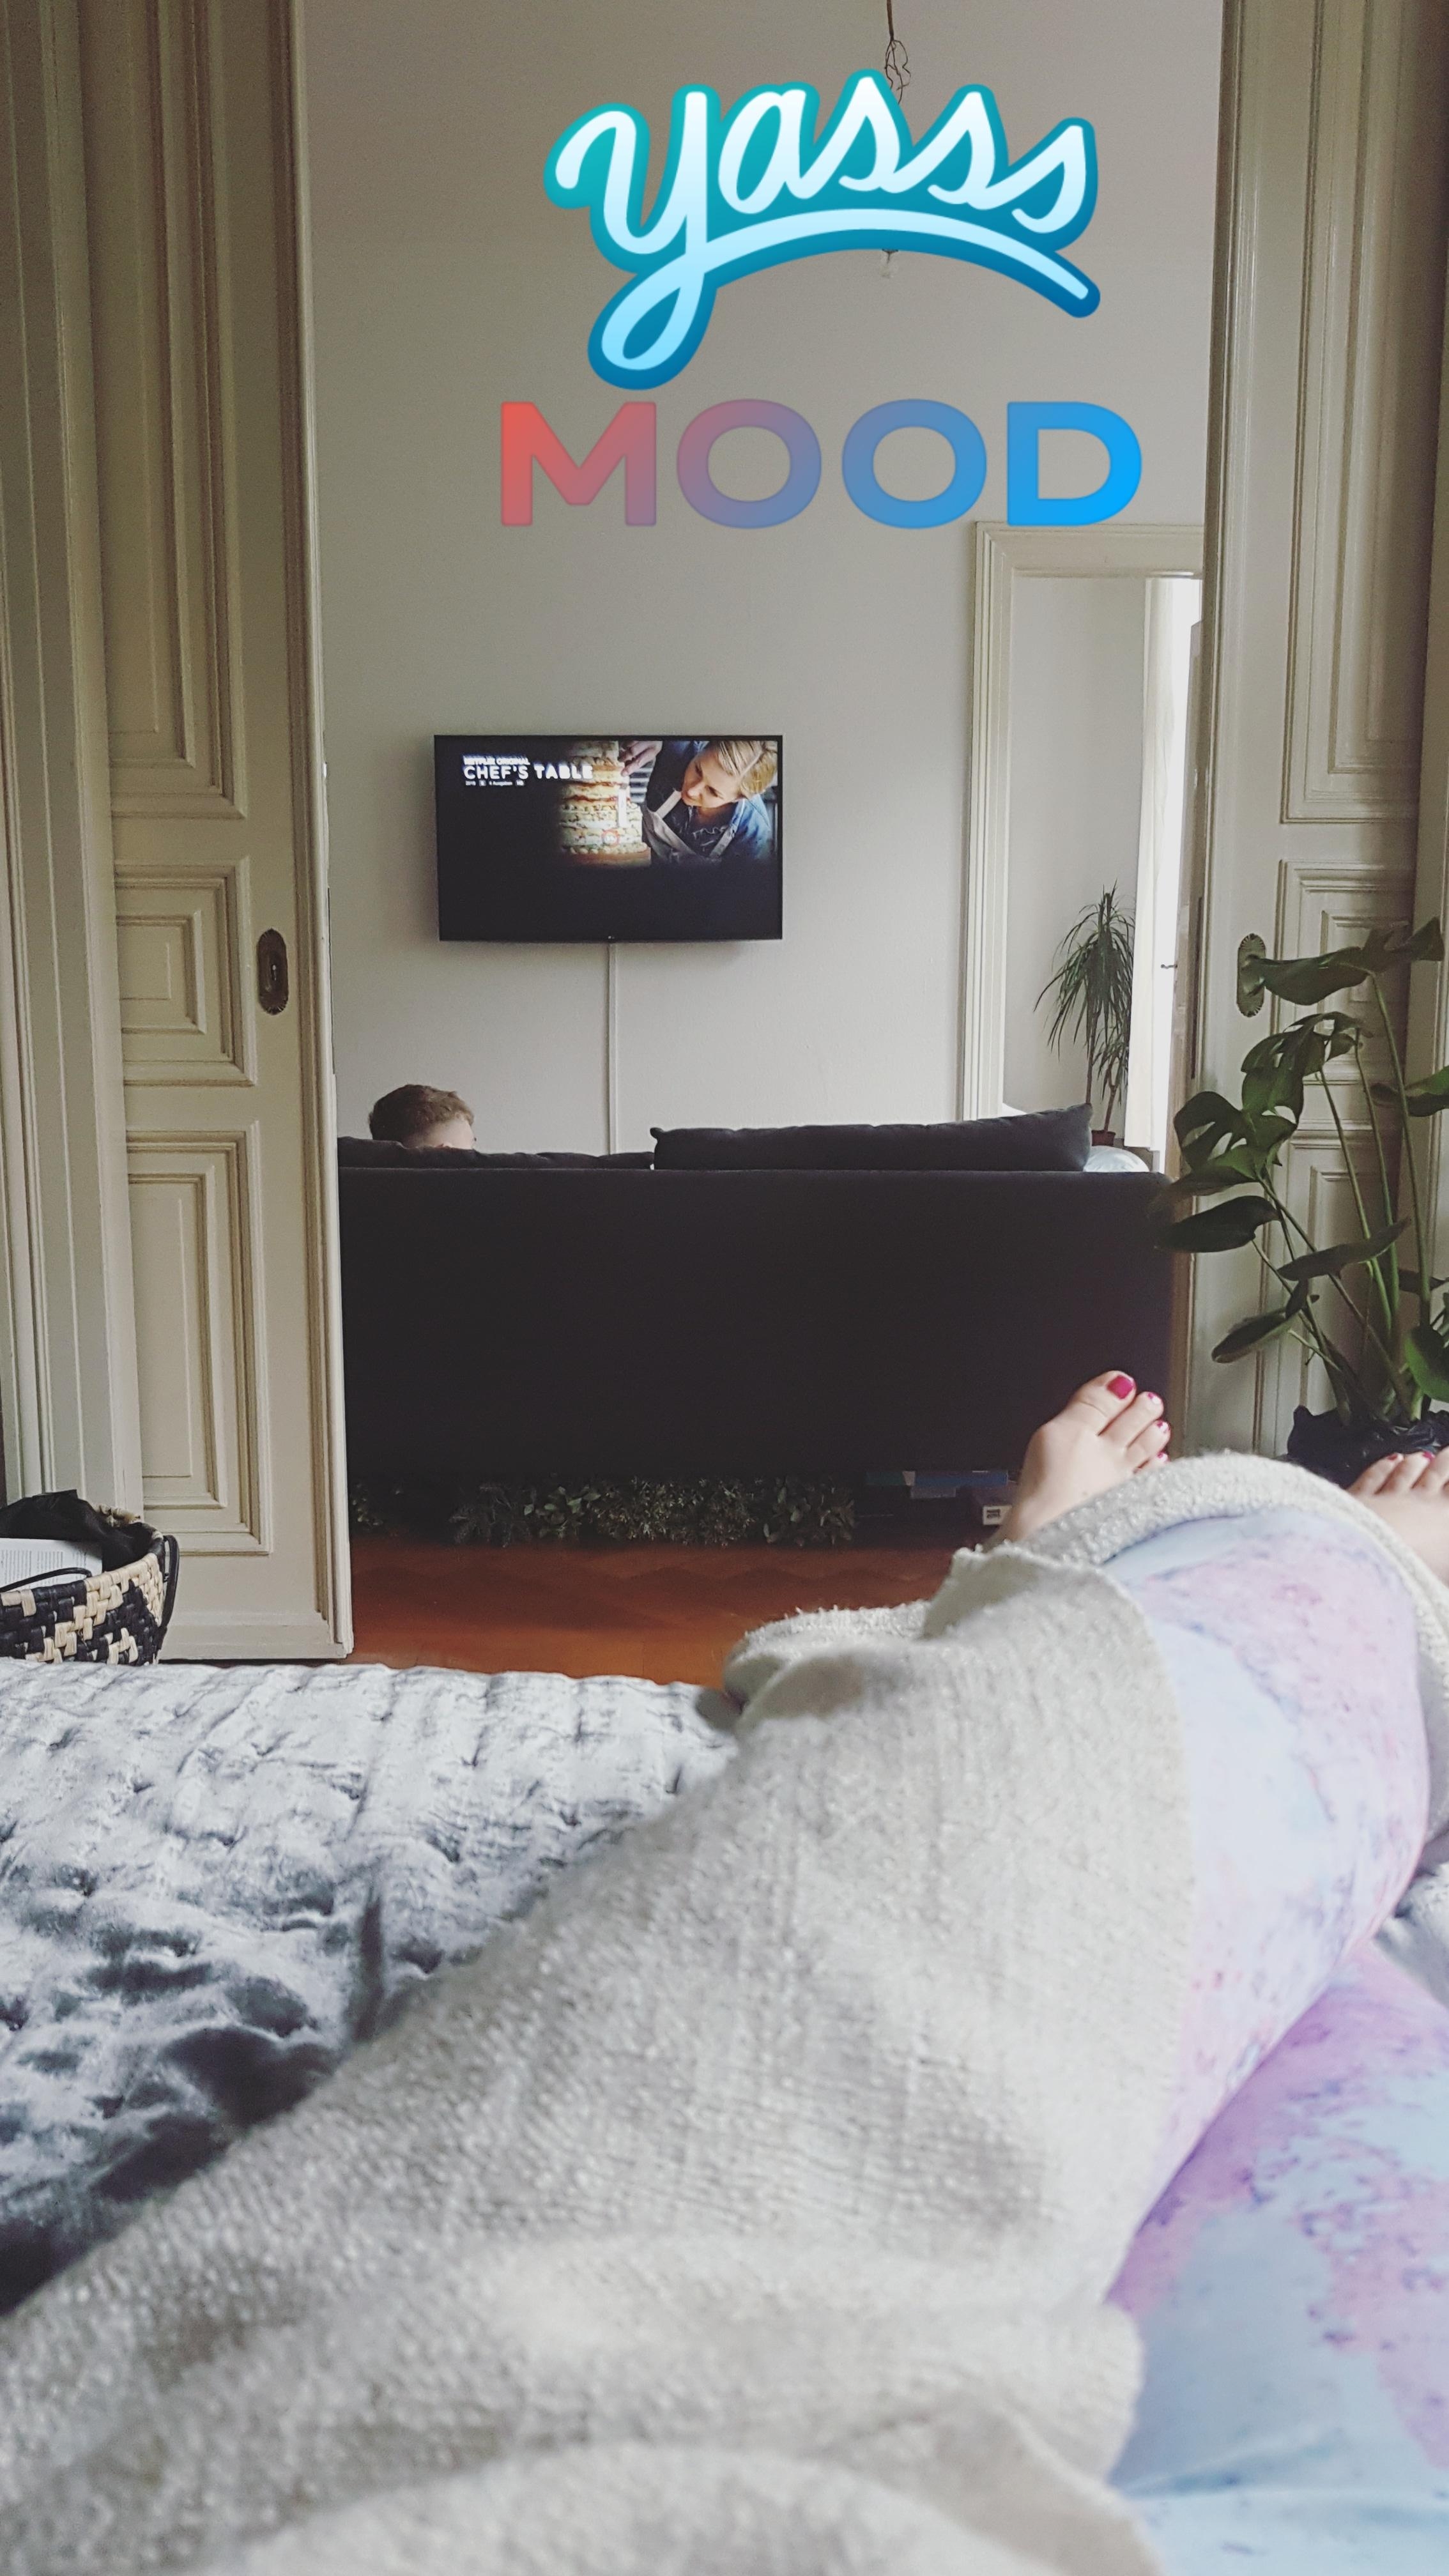 Gemütliches WG Leben - und der TV hängt perfekt um vom Bett aus zu schauen #tvgoals #interiorwg #sonntags